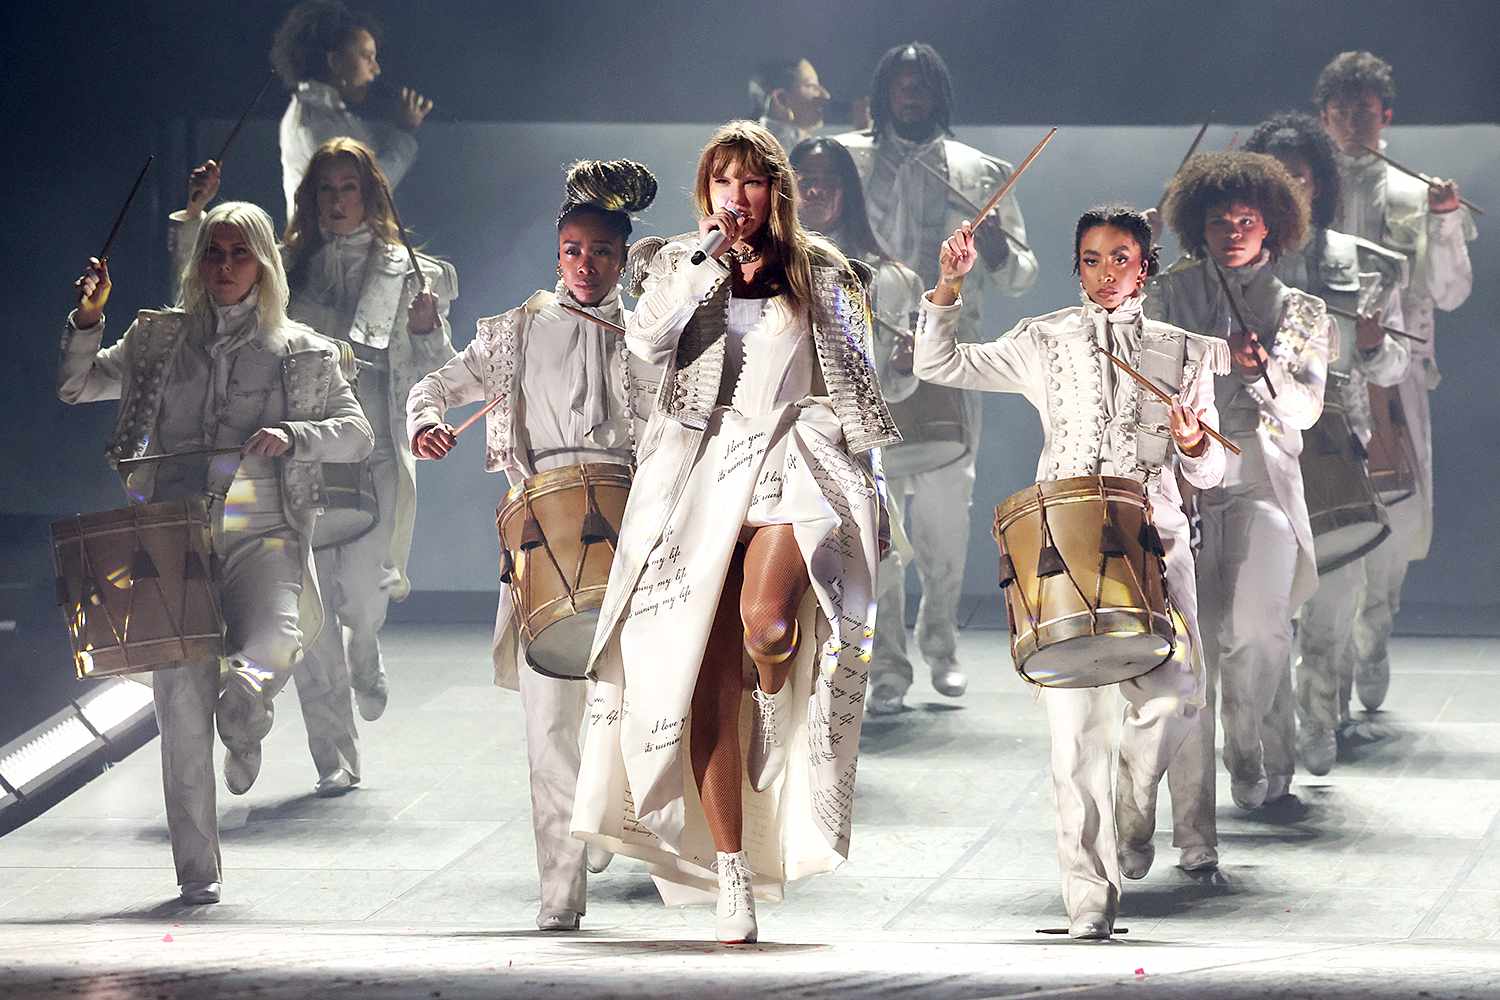 Taylor Swift reanuda el 'Eras Tour' y añade temas de su nuevo álbum 'The Tortured Poets Department'